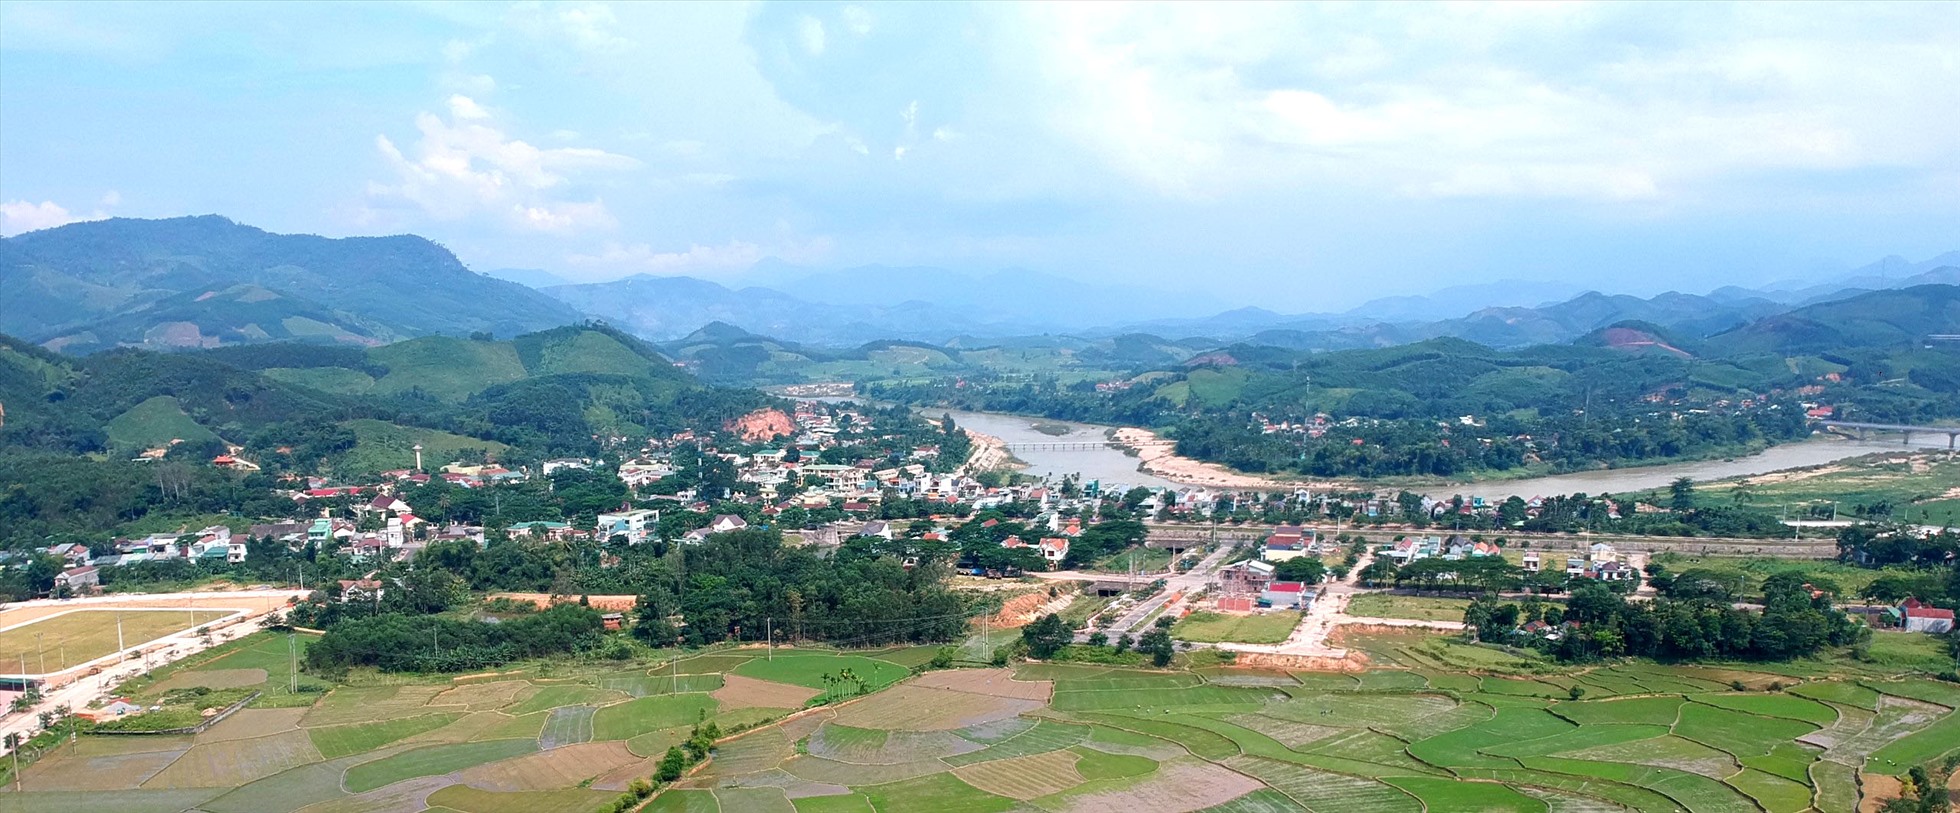 Huyện Sơn Hà, tỉnh Quảng Ngãi, nơi xảy ra động đất.